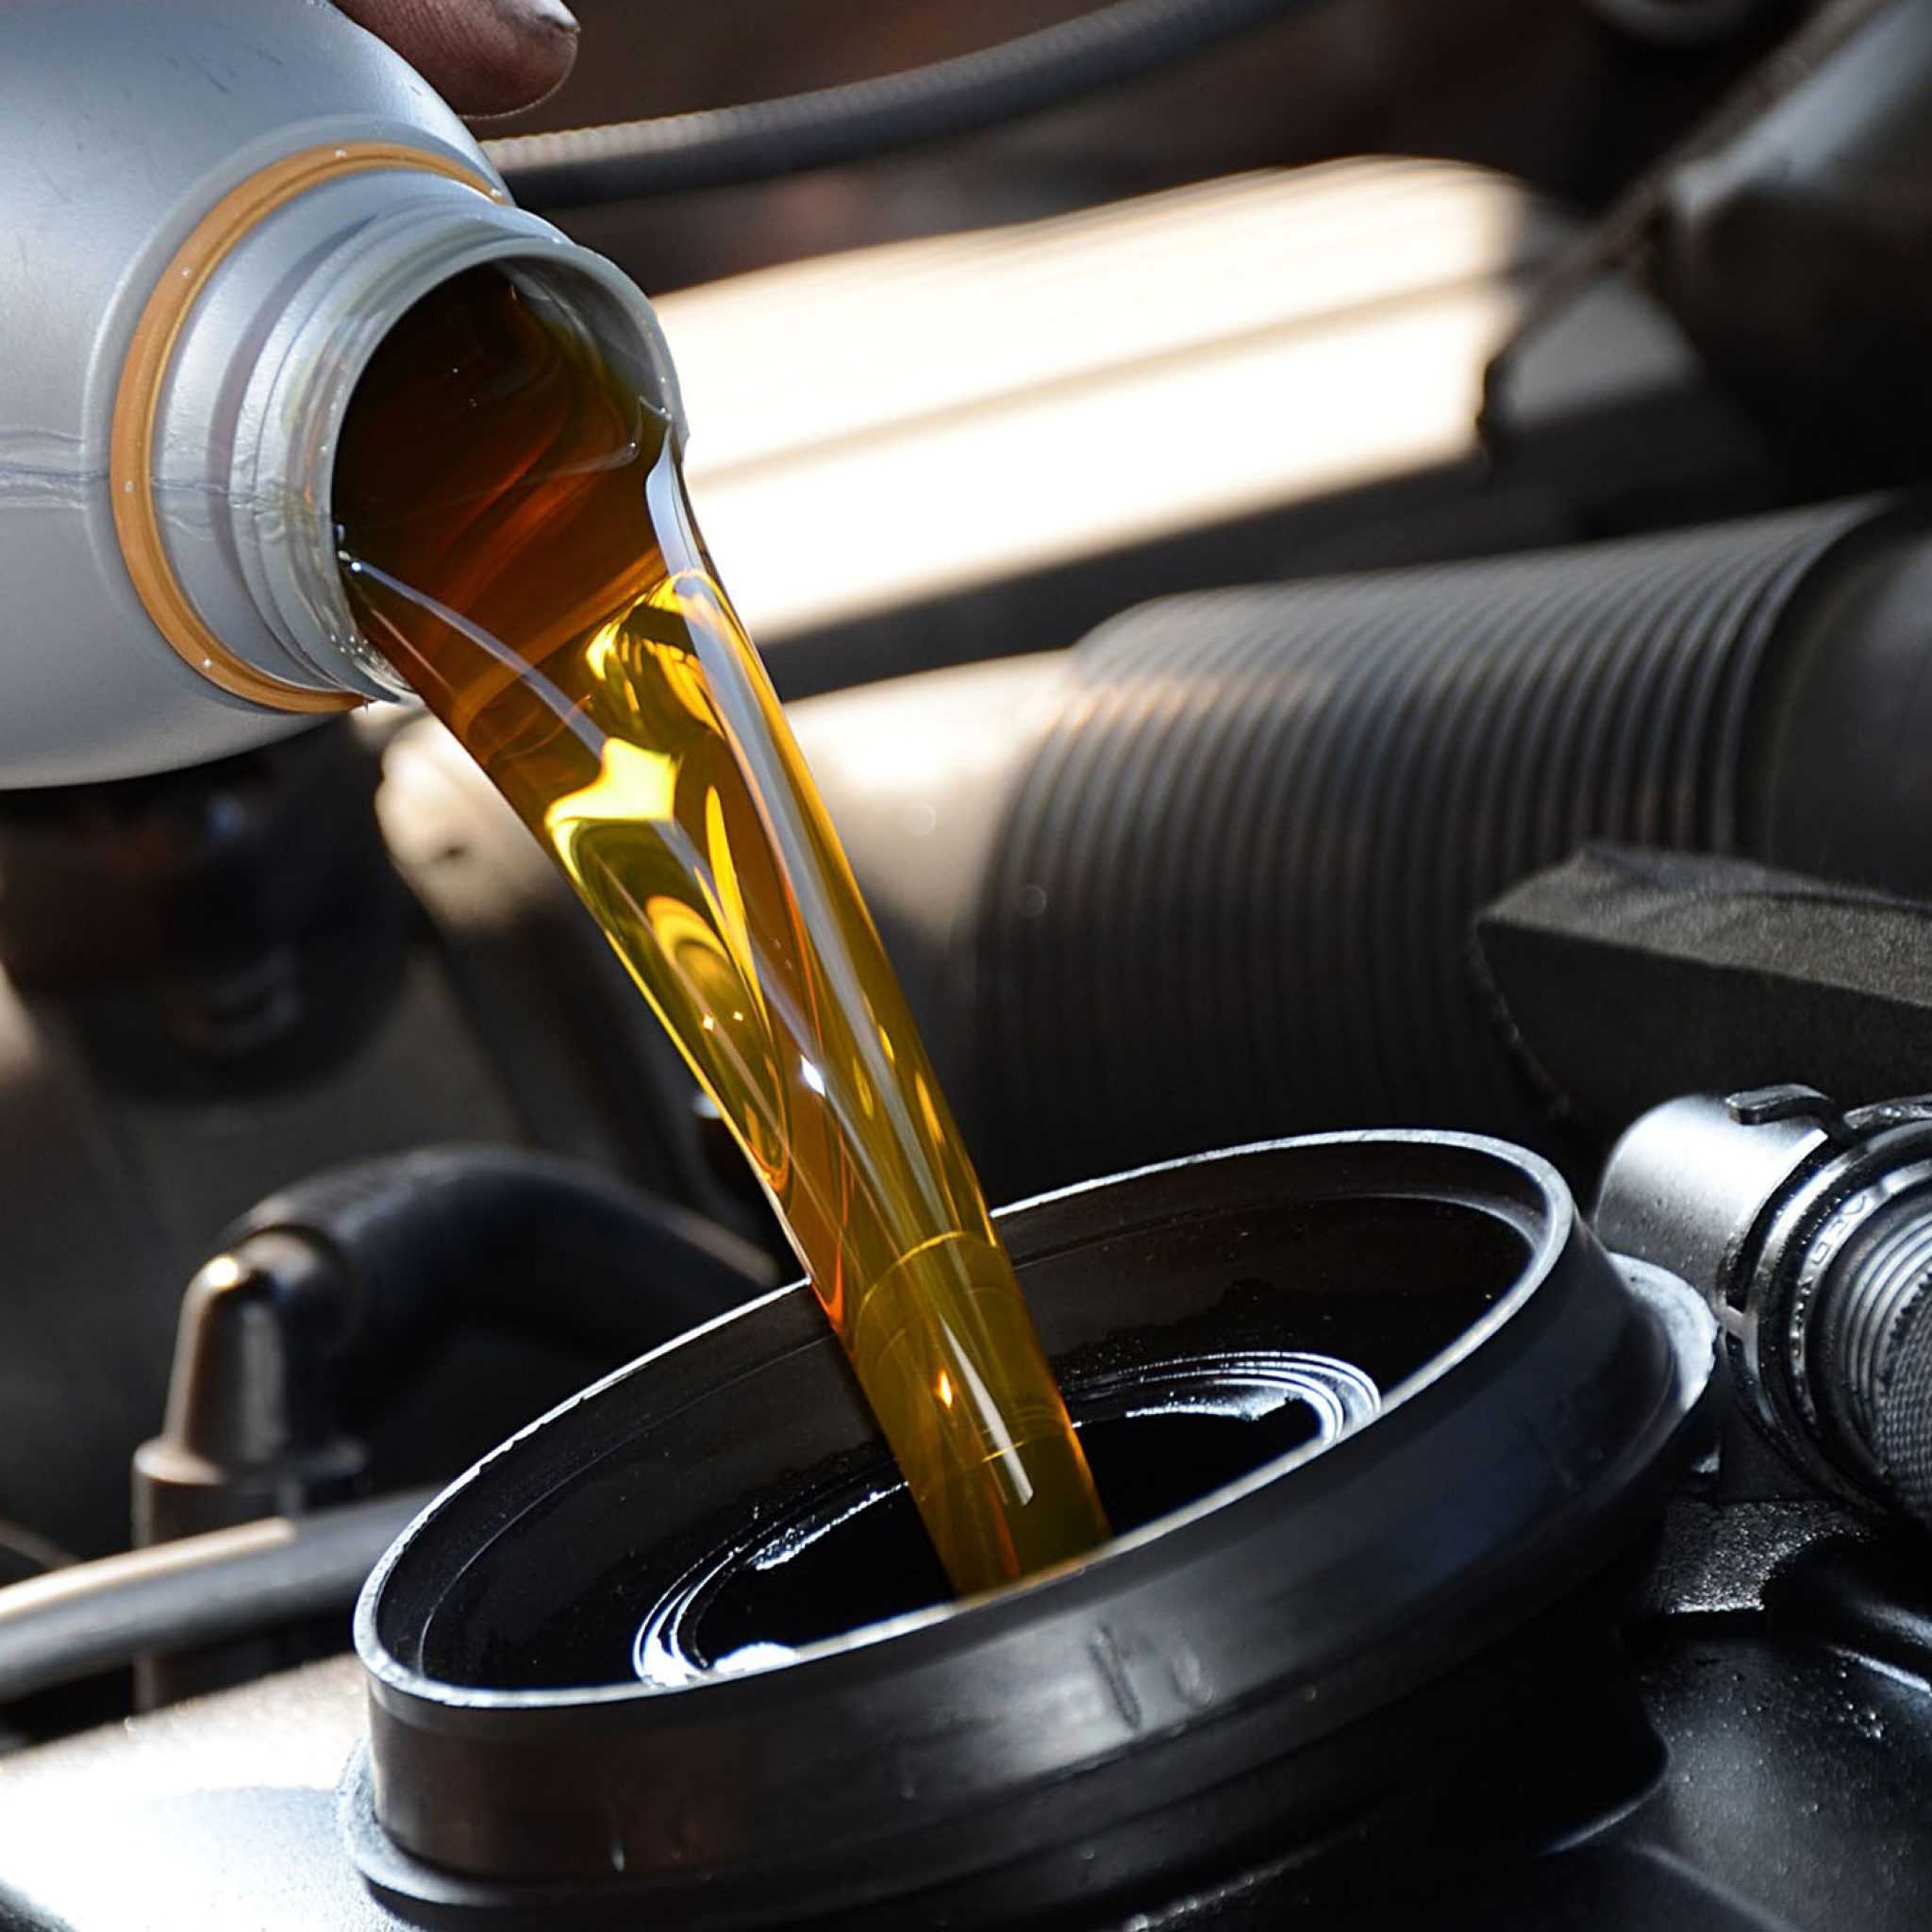 Покупка моторного масла на розлив — большой риск для автовладельца Не каждый состав в бочке отвечает высокому уровню качества, что может неблагоприятно сказаться на состоянии мотора